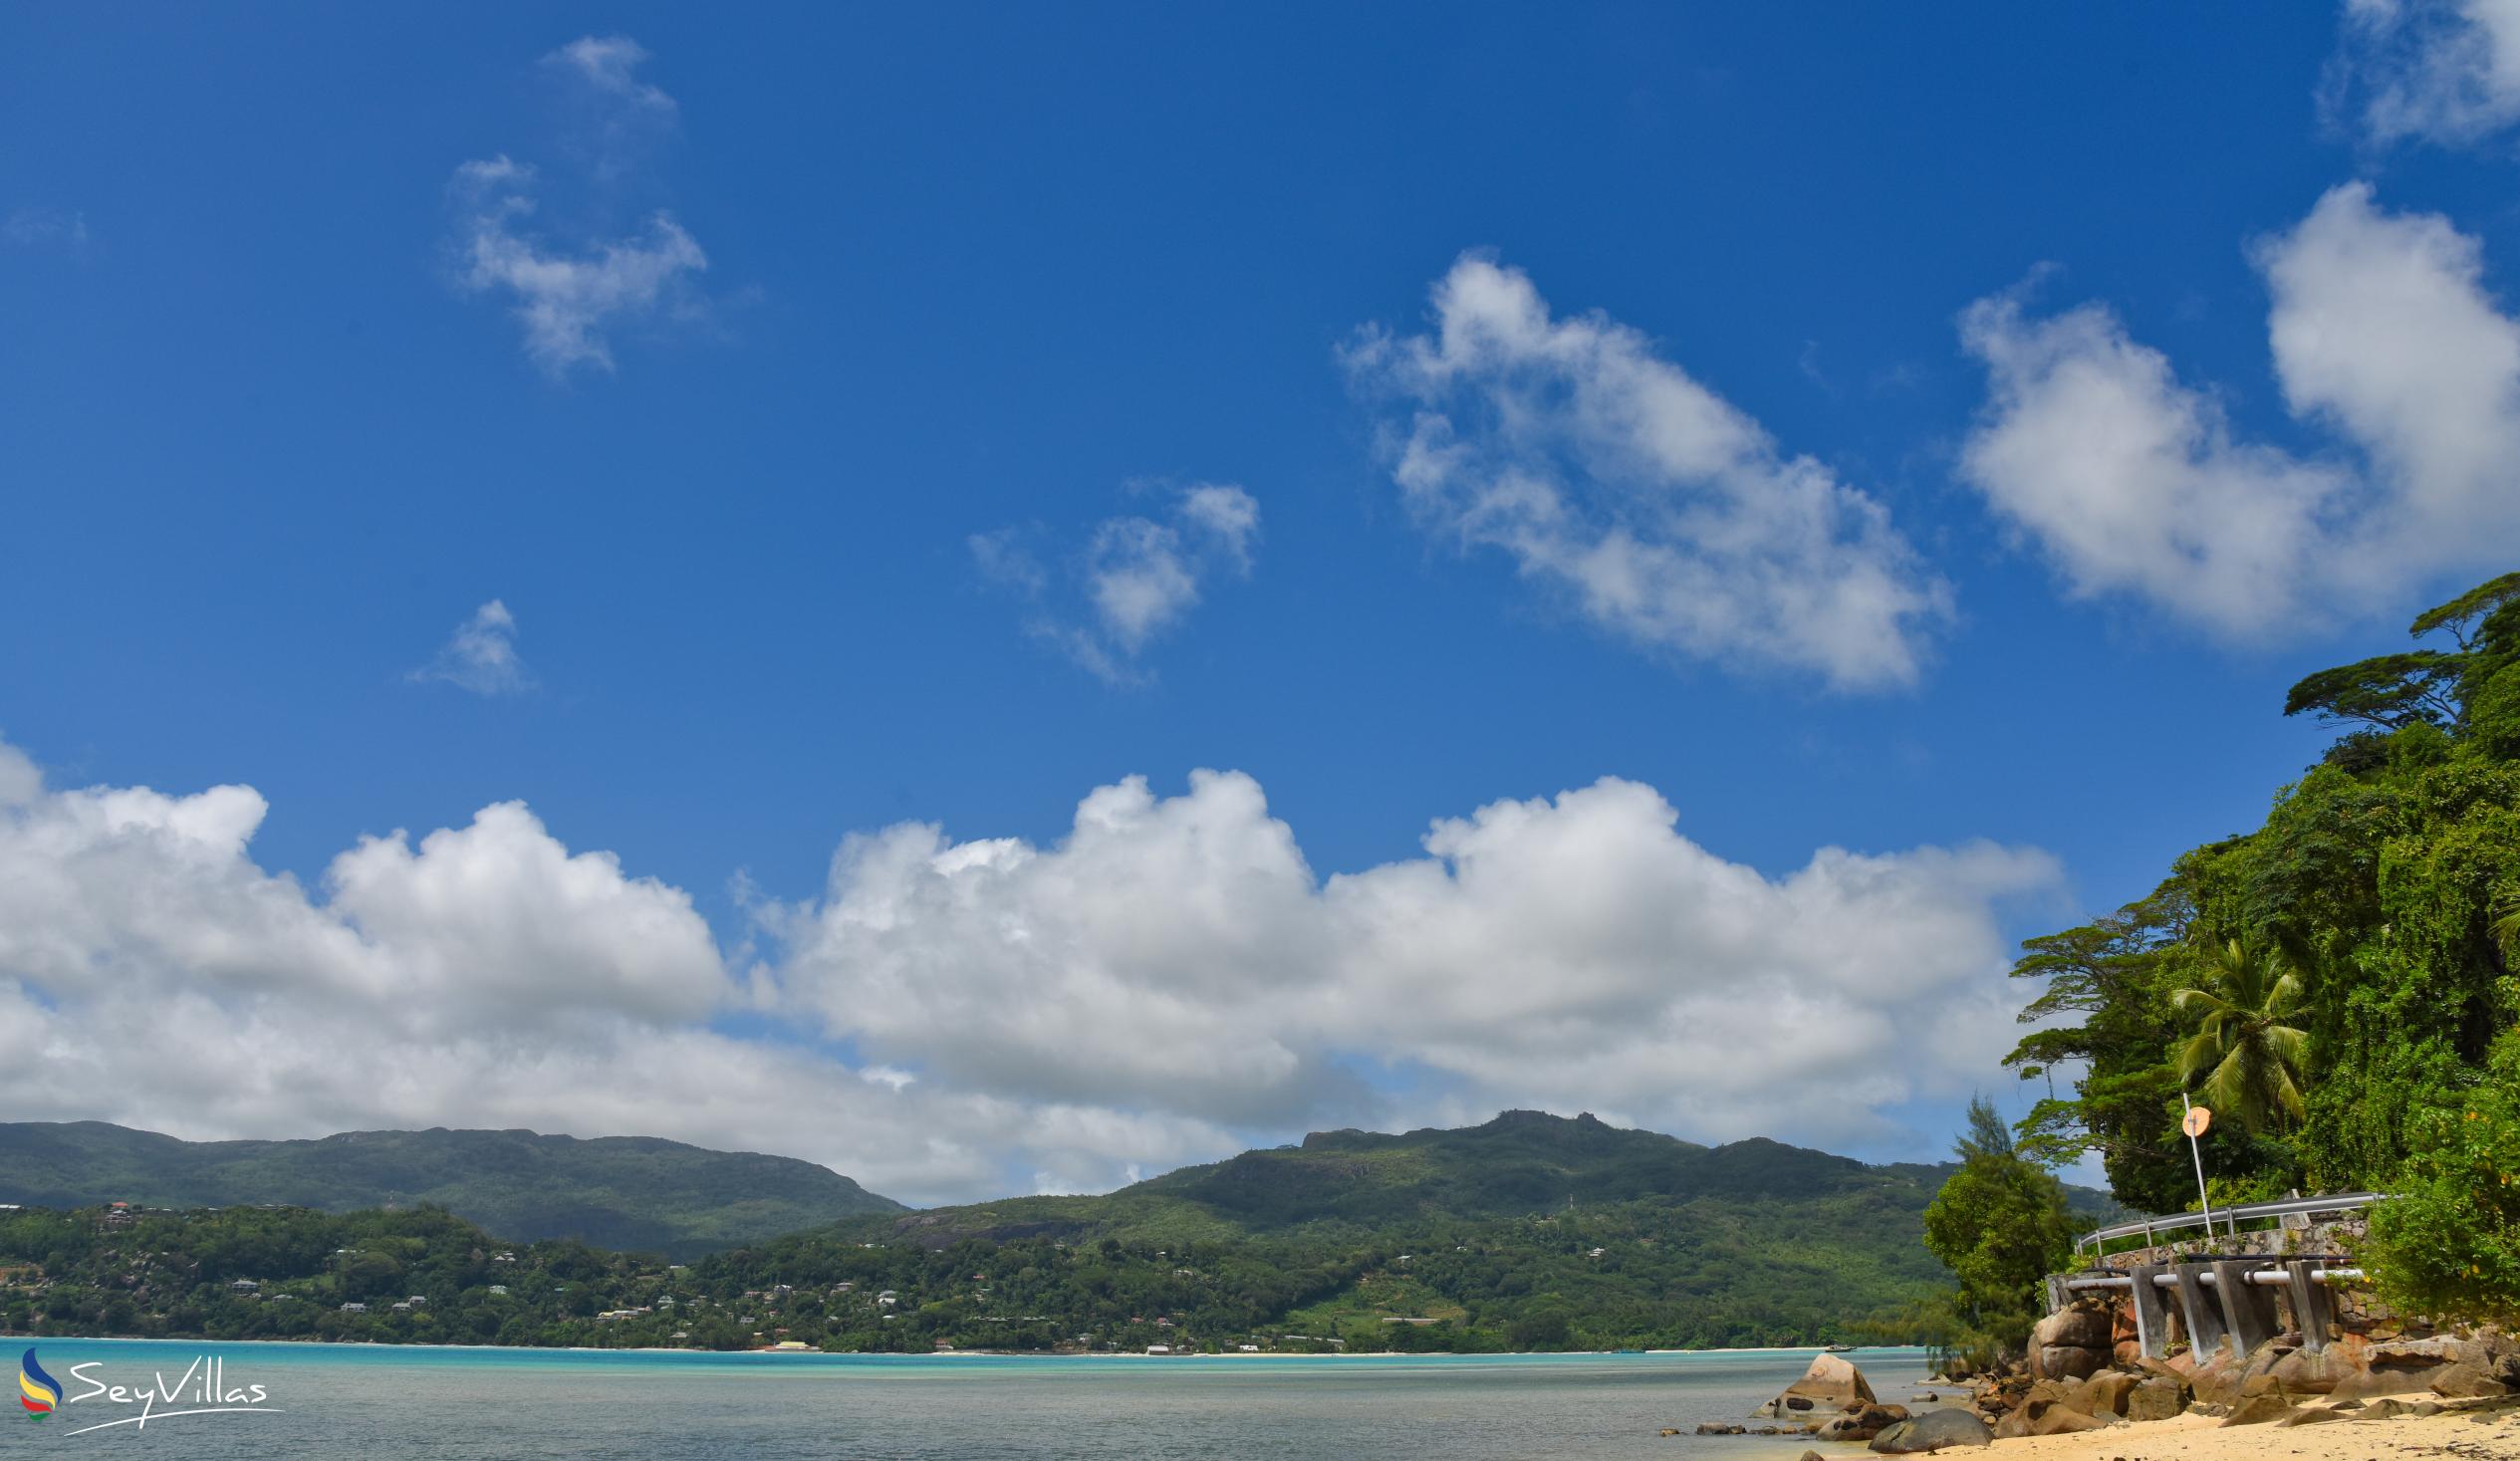 Photo 8: Anse aux Poules Bleues - Mahé (Seychelles)